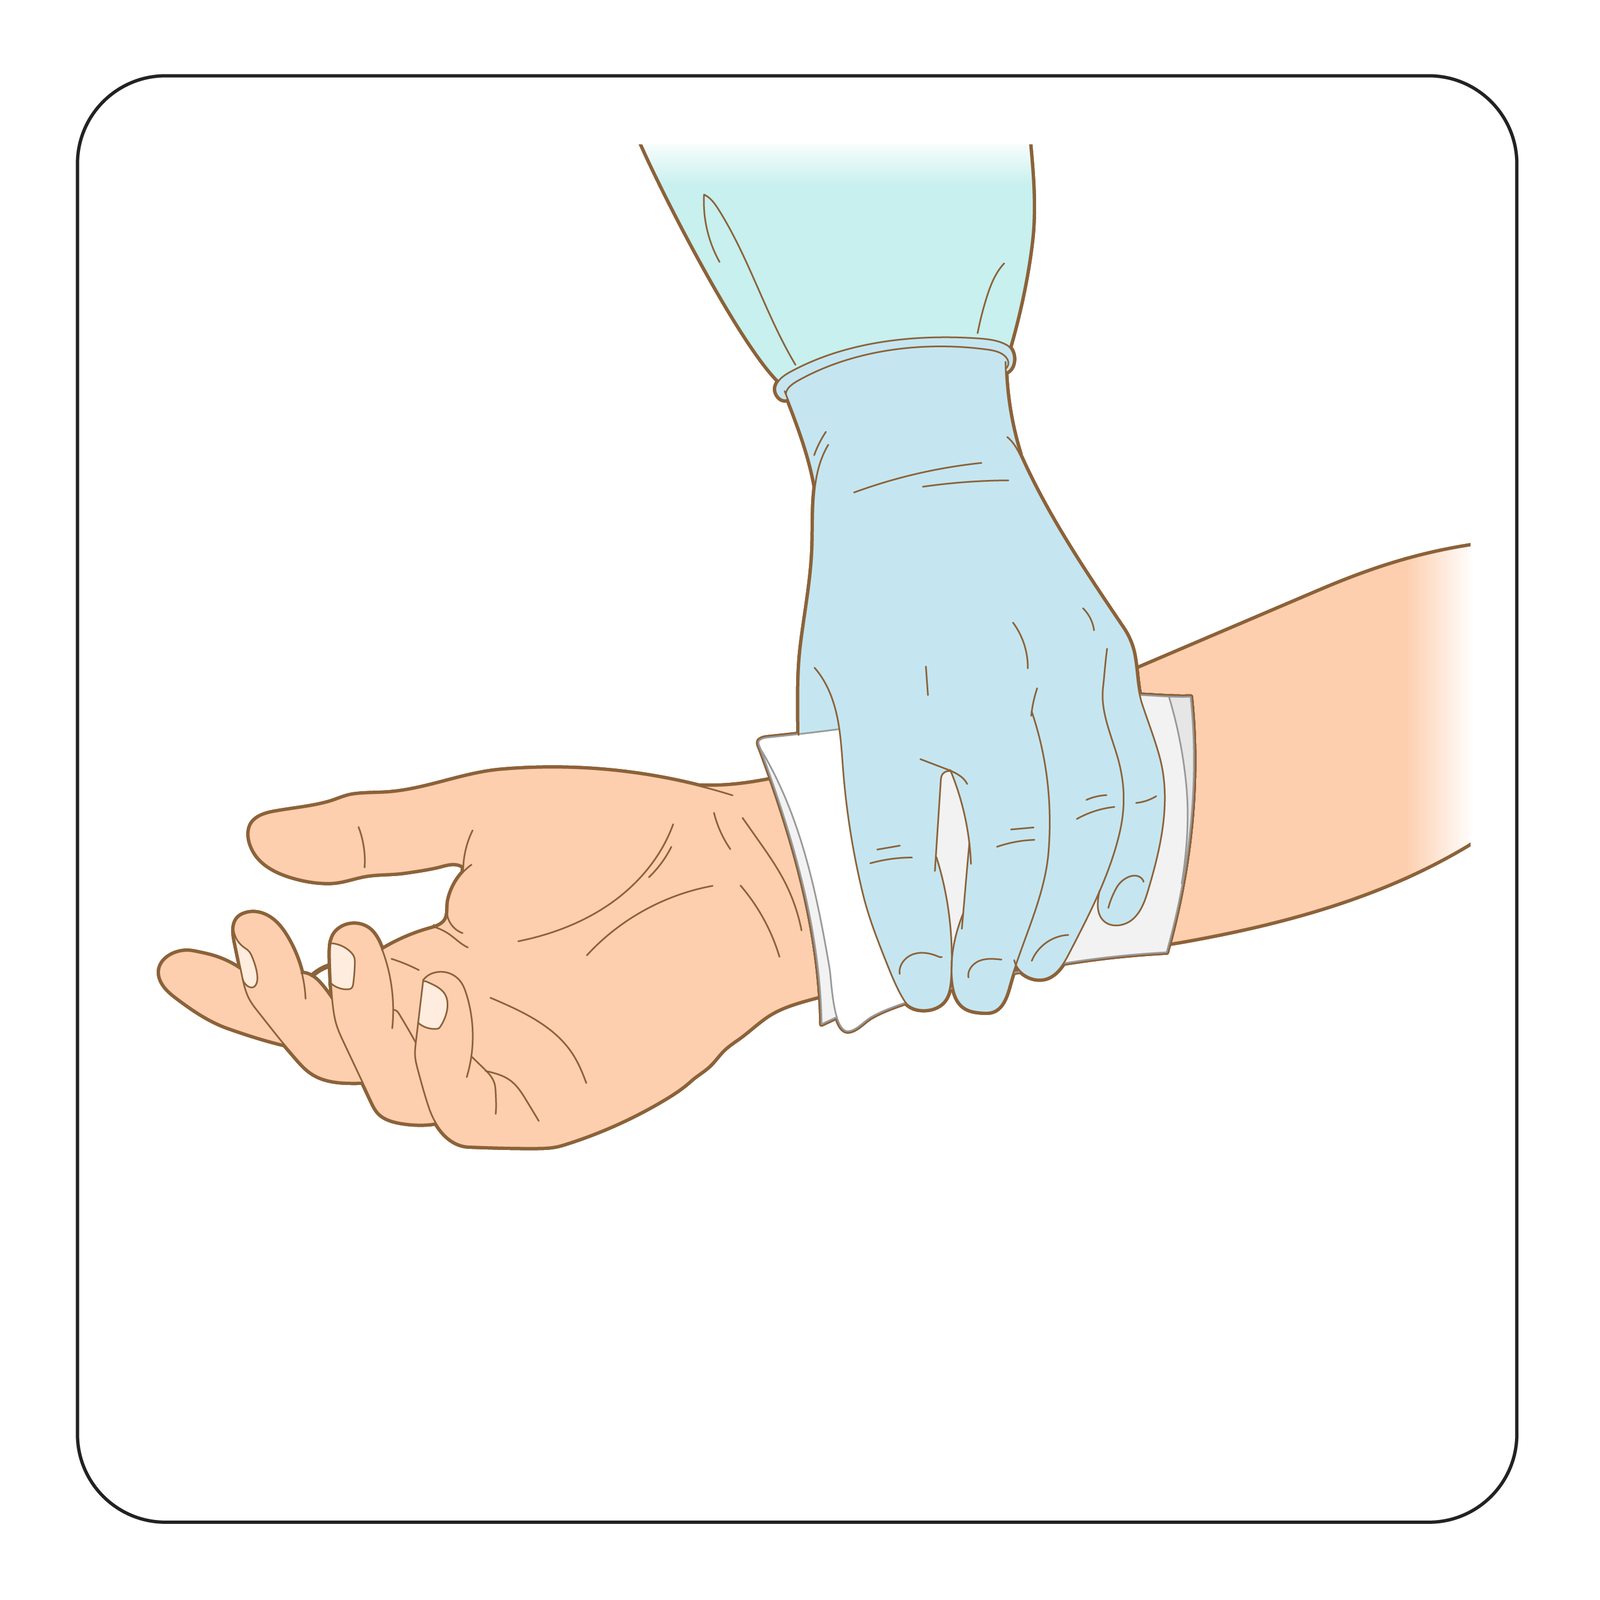 Ilustracja przedstawia sposób umieszczenia jałowej gazy na zranieniu. Prawa ręka skierowana w lewą stronę. Dłoń otwarta, wnętrzem skierowana w stronę obserwatora. Sanitariusz przykłada jałową gazę na miejsce zranienia powyżej nadgarstka. Dłoń sanitariusza w gumowej rękawicy ochronnej.